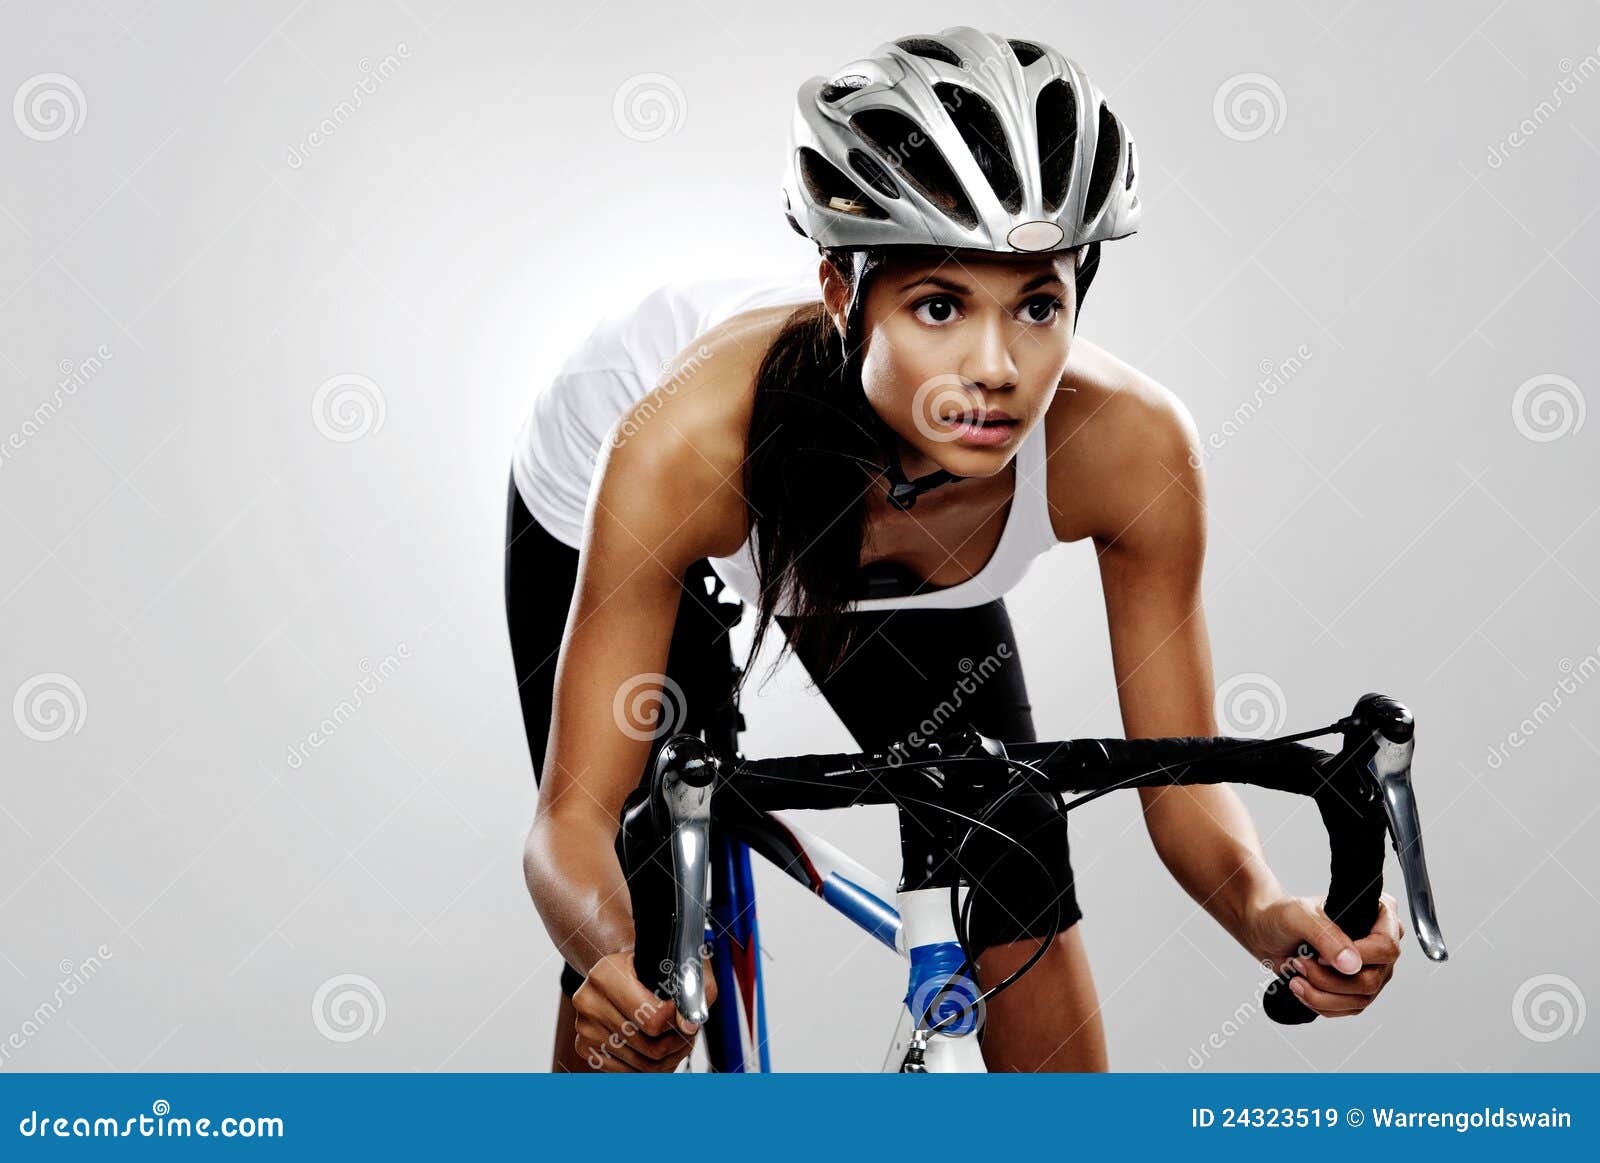 ladies bike race